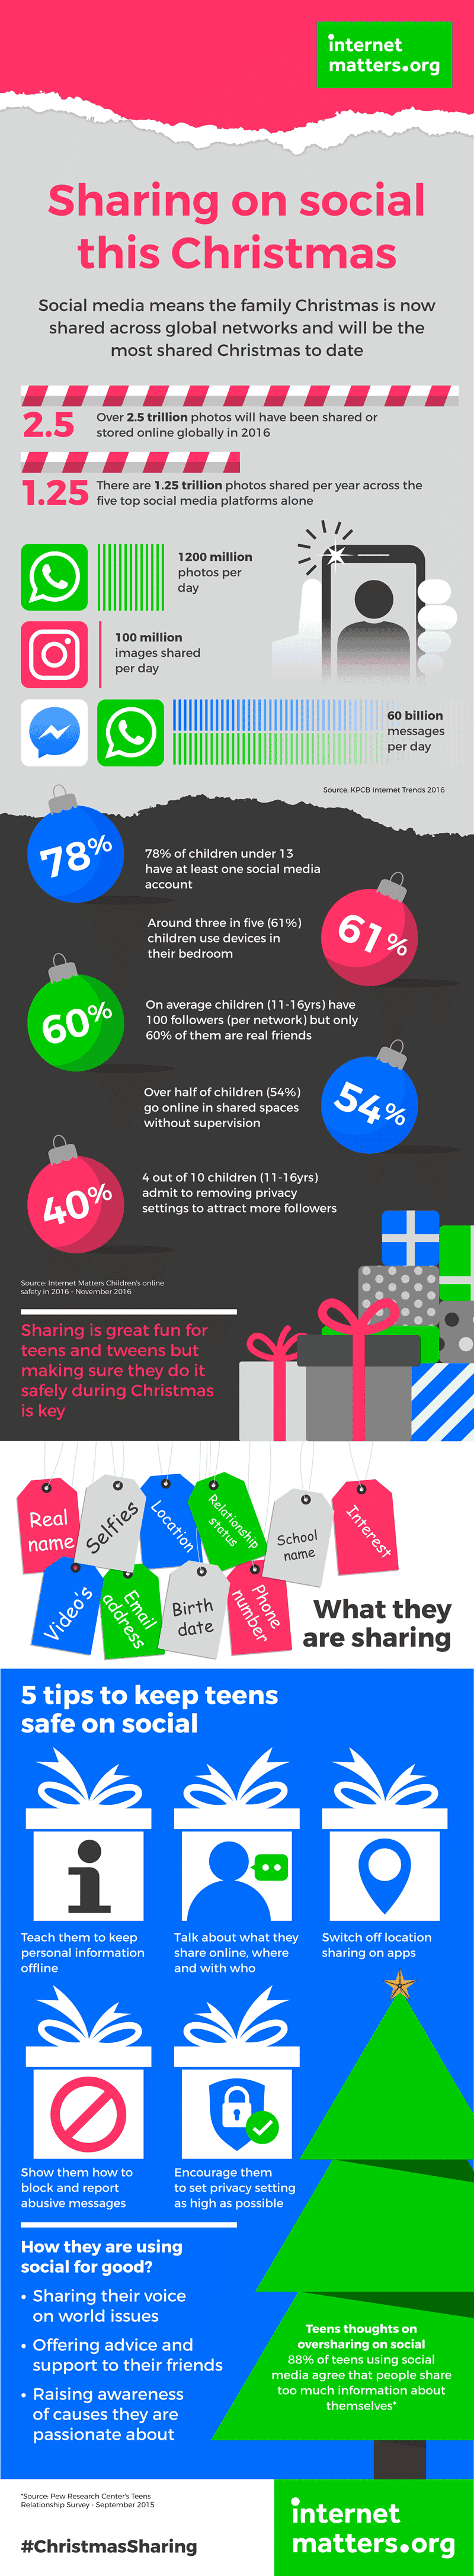 Met deze kerst naar verwachting de meest verbonden ooit, zullen 7 miljard afbeeldingen op december 25 op sociale media worden gedeeld. Bekijk andere statistieken over sociaal delen en tips om kinderen te helpen veilig online te delen.